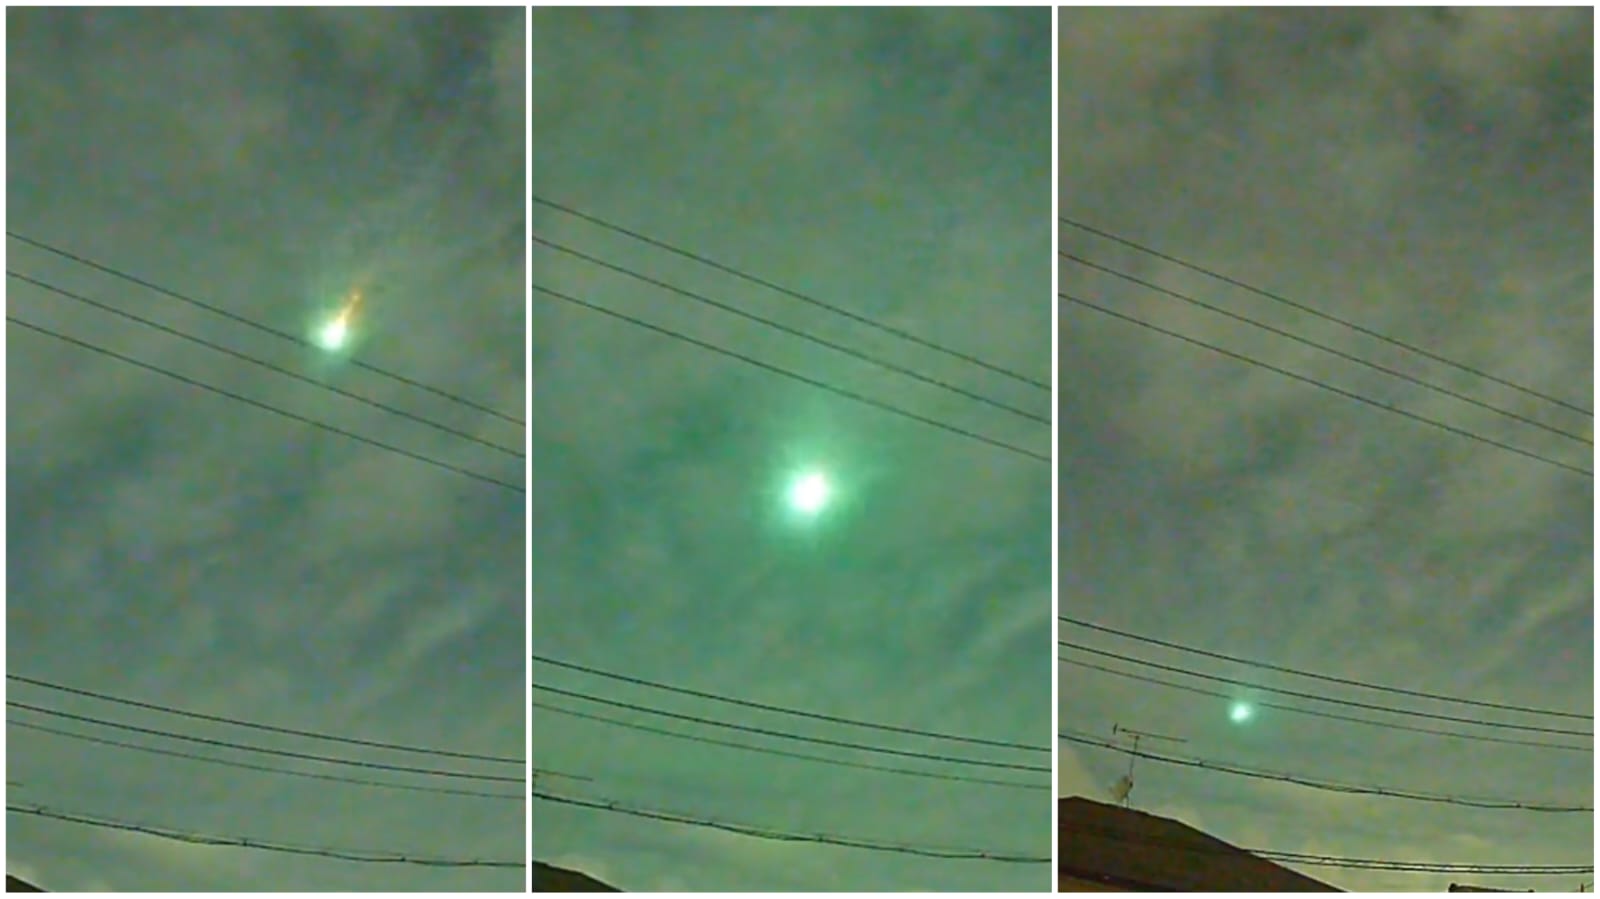 Bola de fogo era um meteoro - Foto: Reprodução/Twitter/@dfuji1